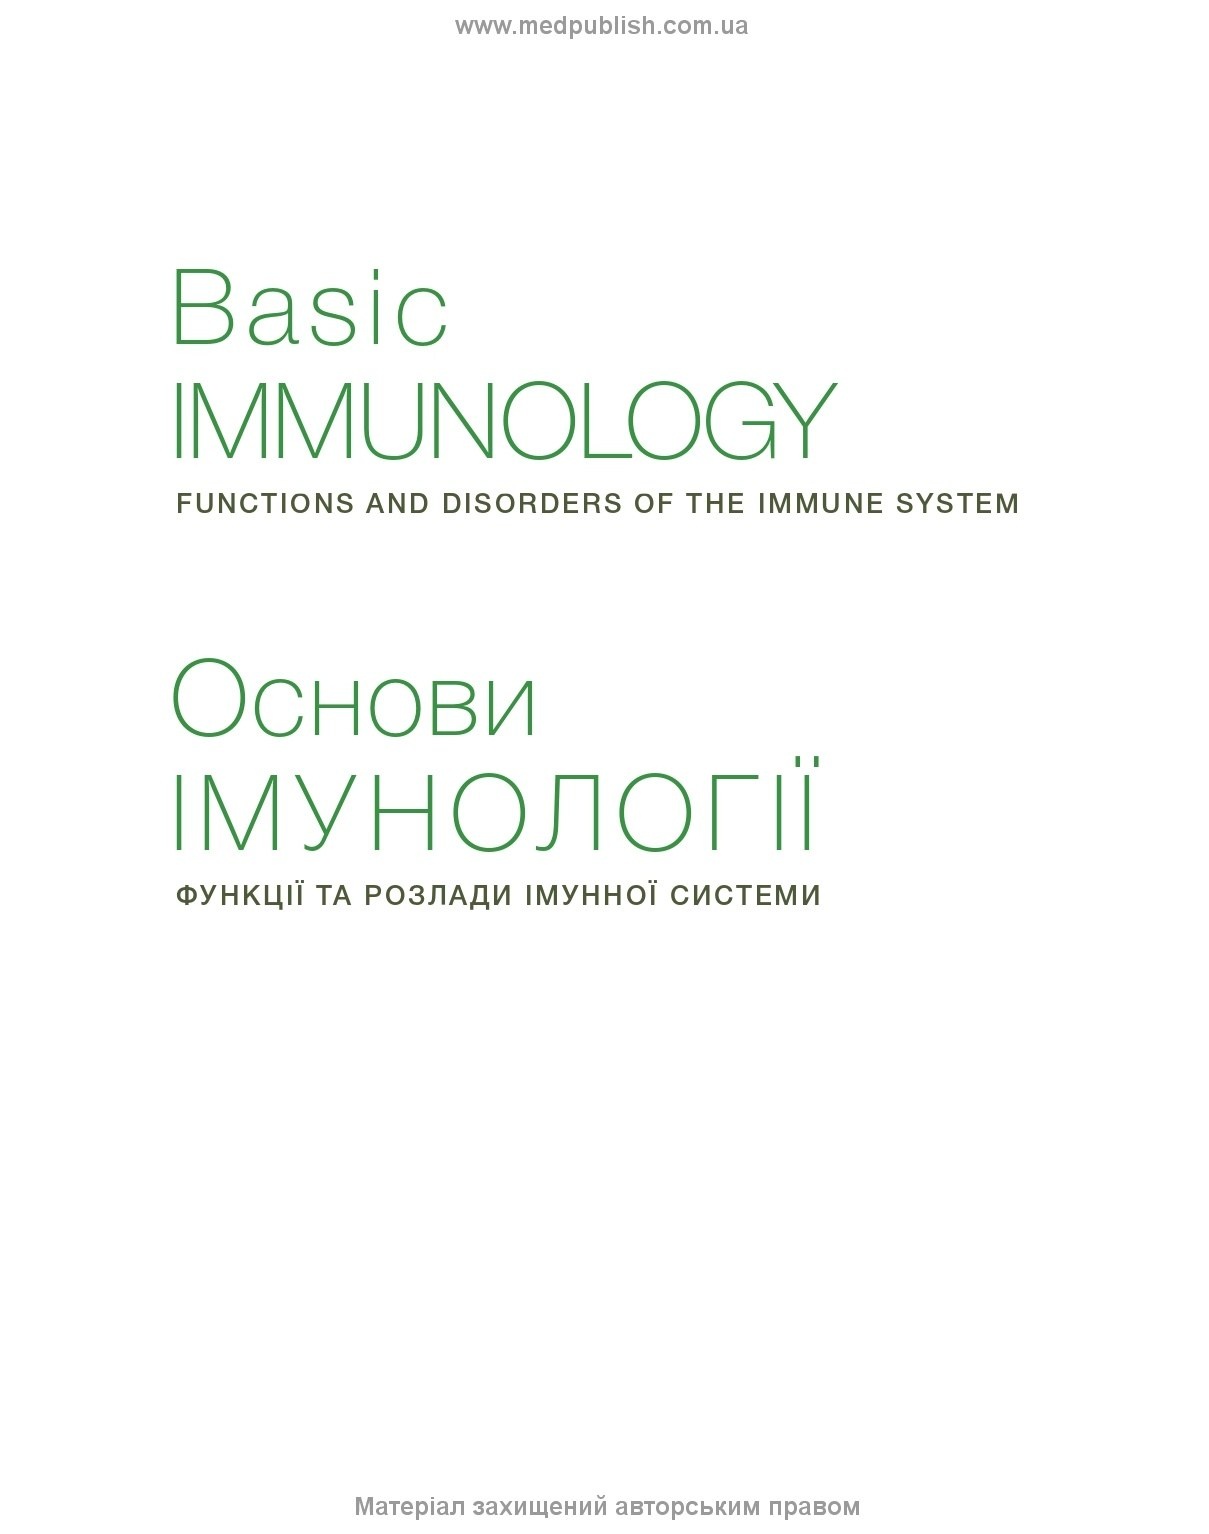 Основи імунології: функції та розлади імунної системи: 6-е видання. Автор — Абул К. Аббас, Сан-Франциско, Ендрю Г. Ліхтман, Шив Піллай. 